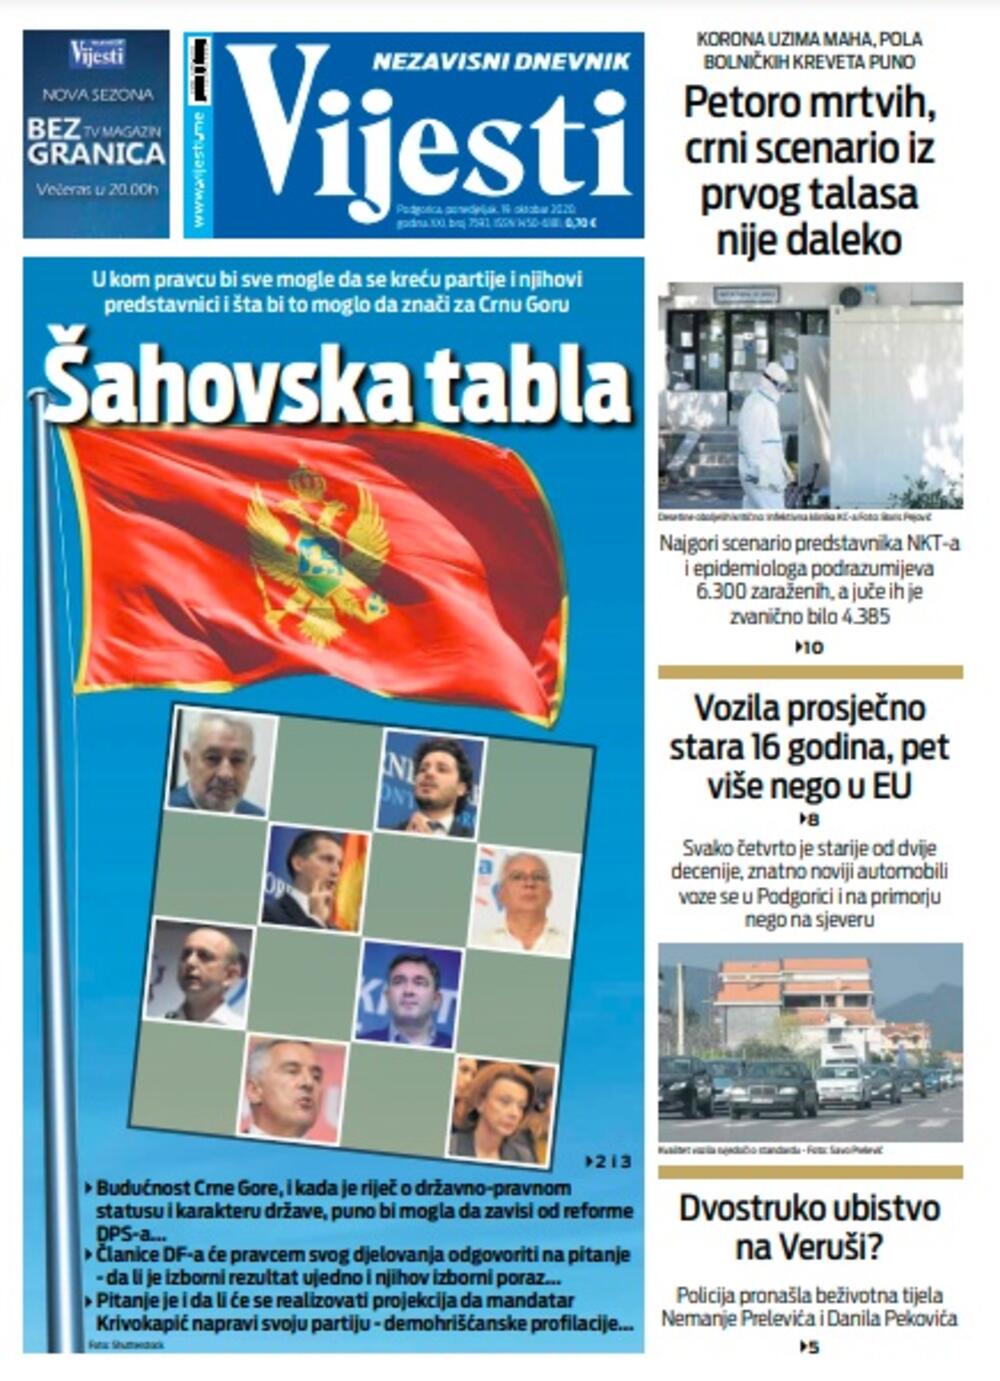 Naslovna strana "Vijesti" za ponedjeljak 19. oktobar 2020. godine, Foto: Vijesti